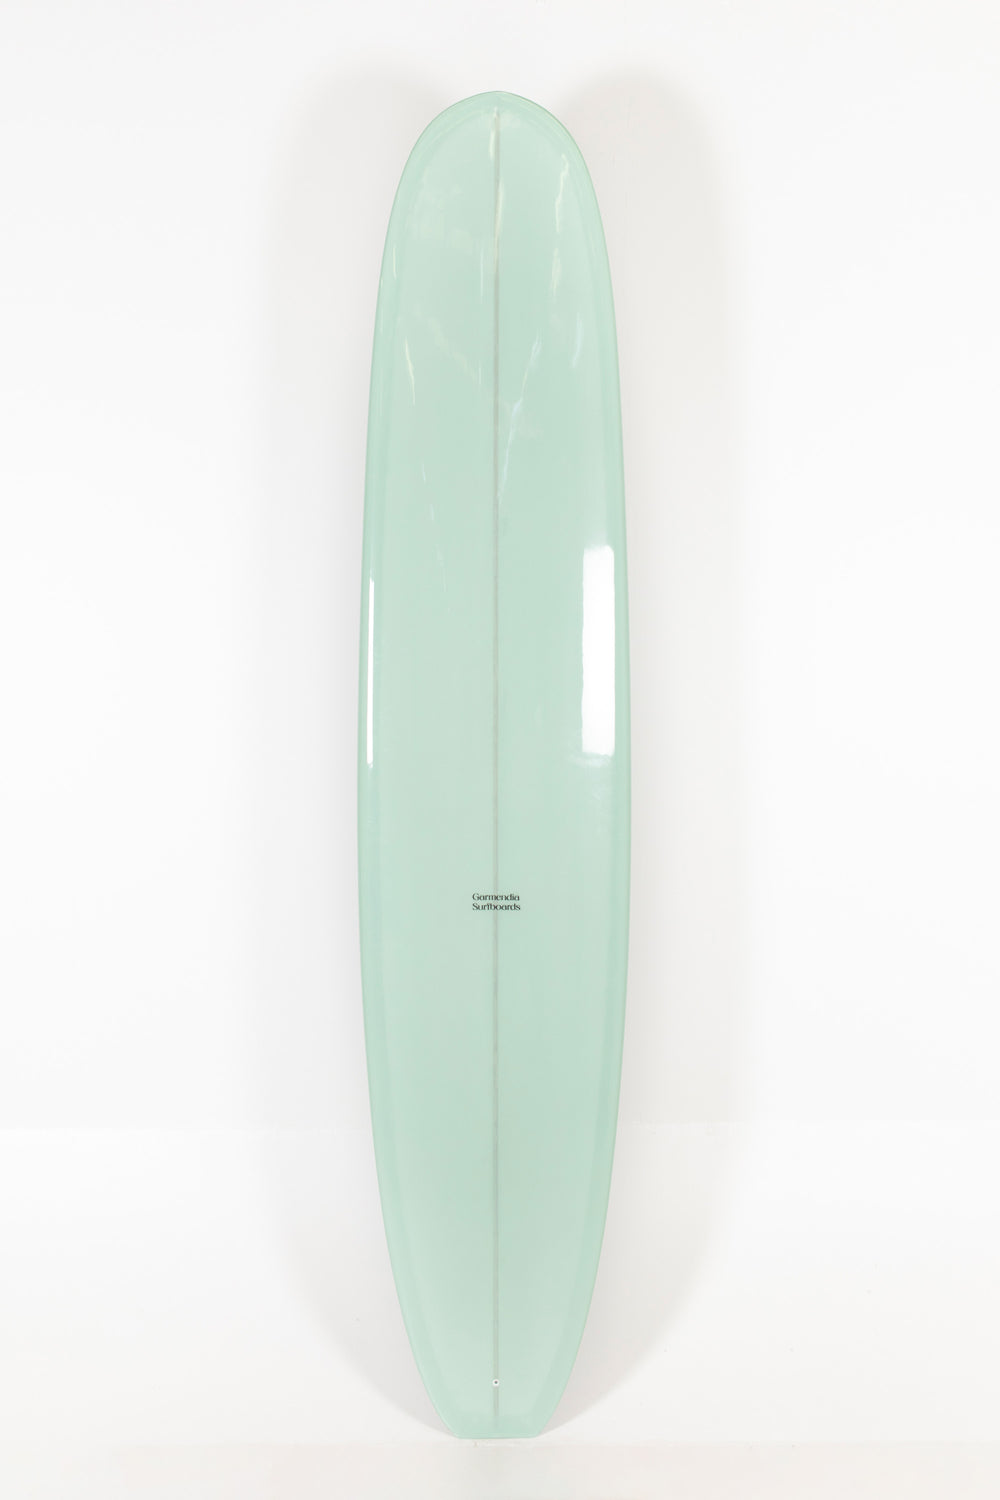 Garmendia Surfboards - NOSERIDER - 9'4